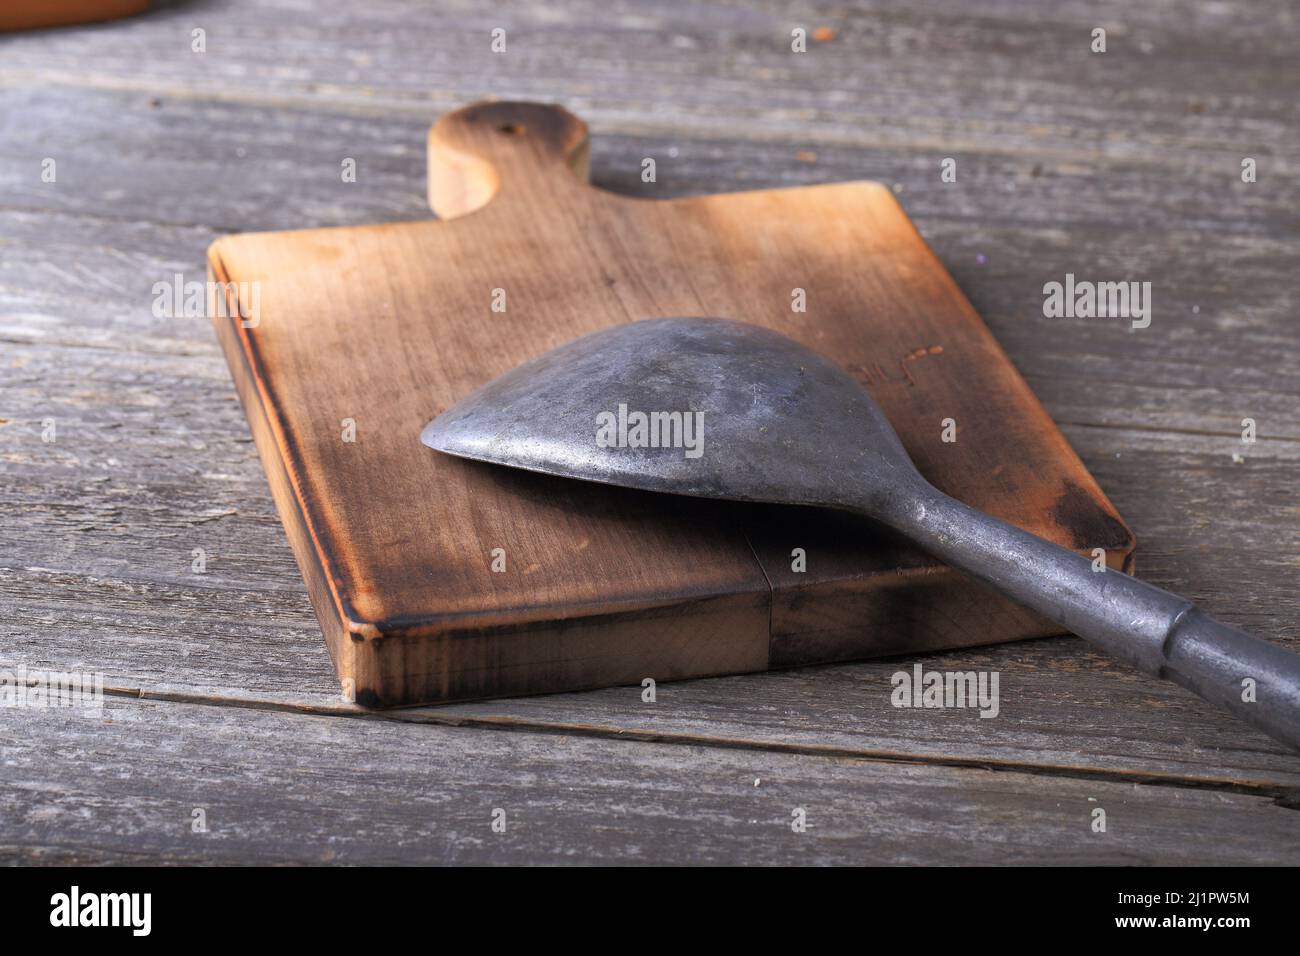 Utensile da cucina in metallo su tagliere in legno Foto Stock